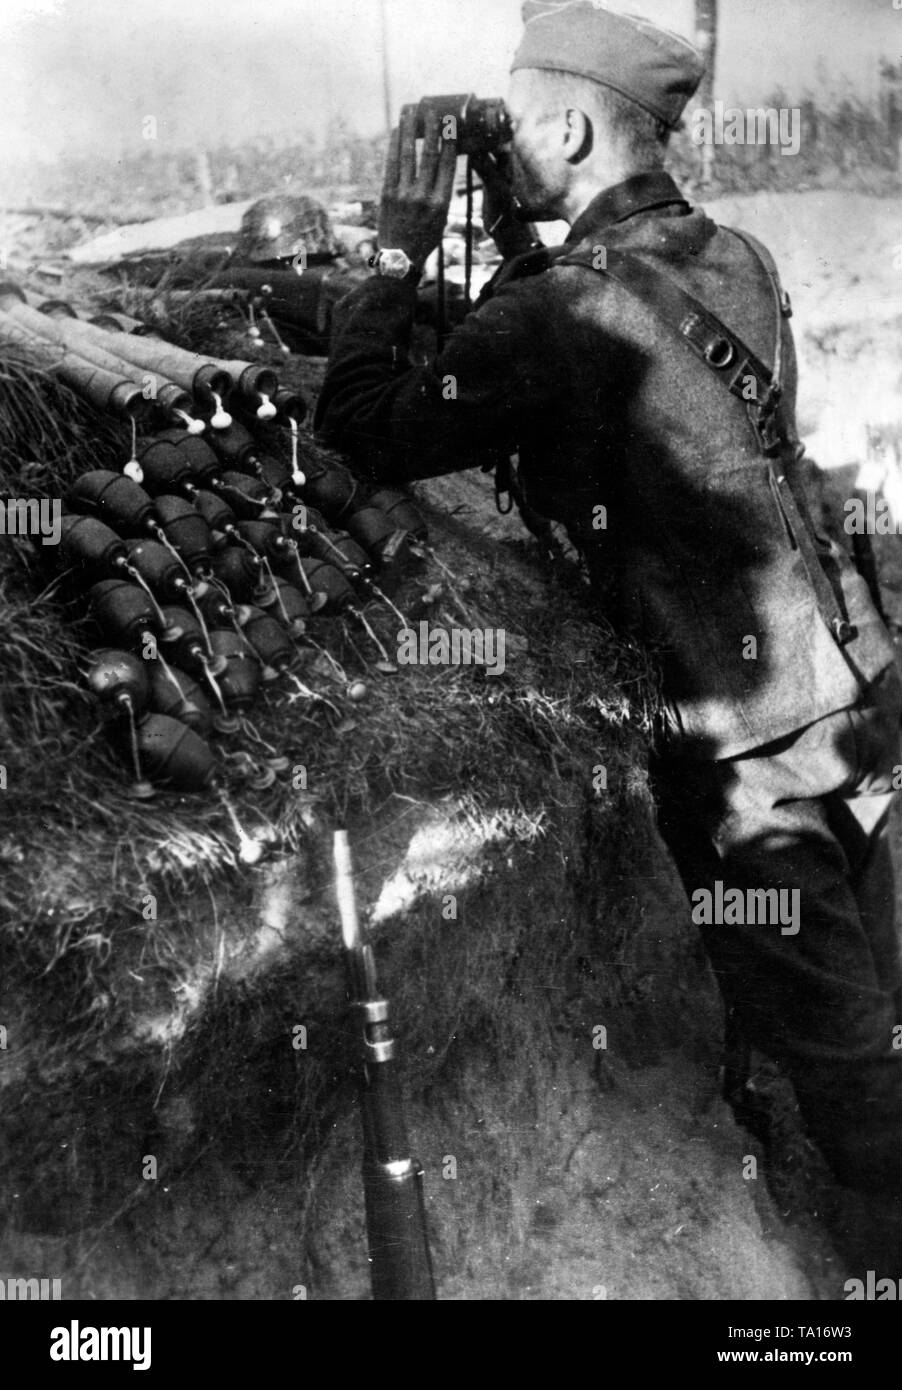 Ein deutscher Soldat beobachtet die umliegende Landschaft aus einem Graben in der Nähe von Leningrad. Neben ihm, zahlreiche Handgranaten und einem Gewehr Mauser (98). Foto der Propaganda Firma (PK): kriegsberichterstatter Ebert. Stockfoto